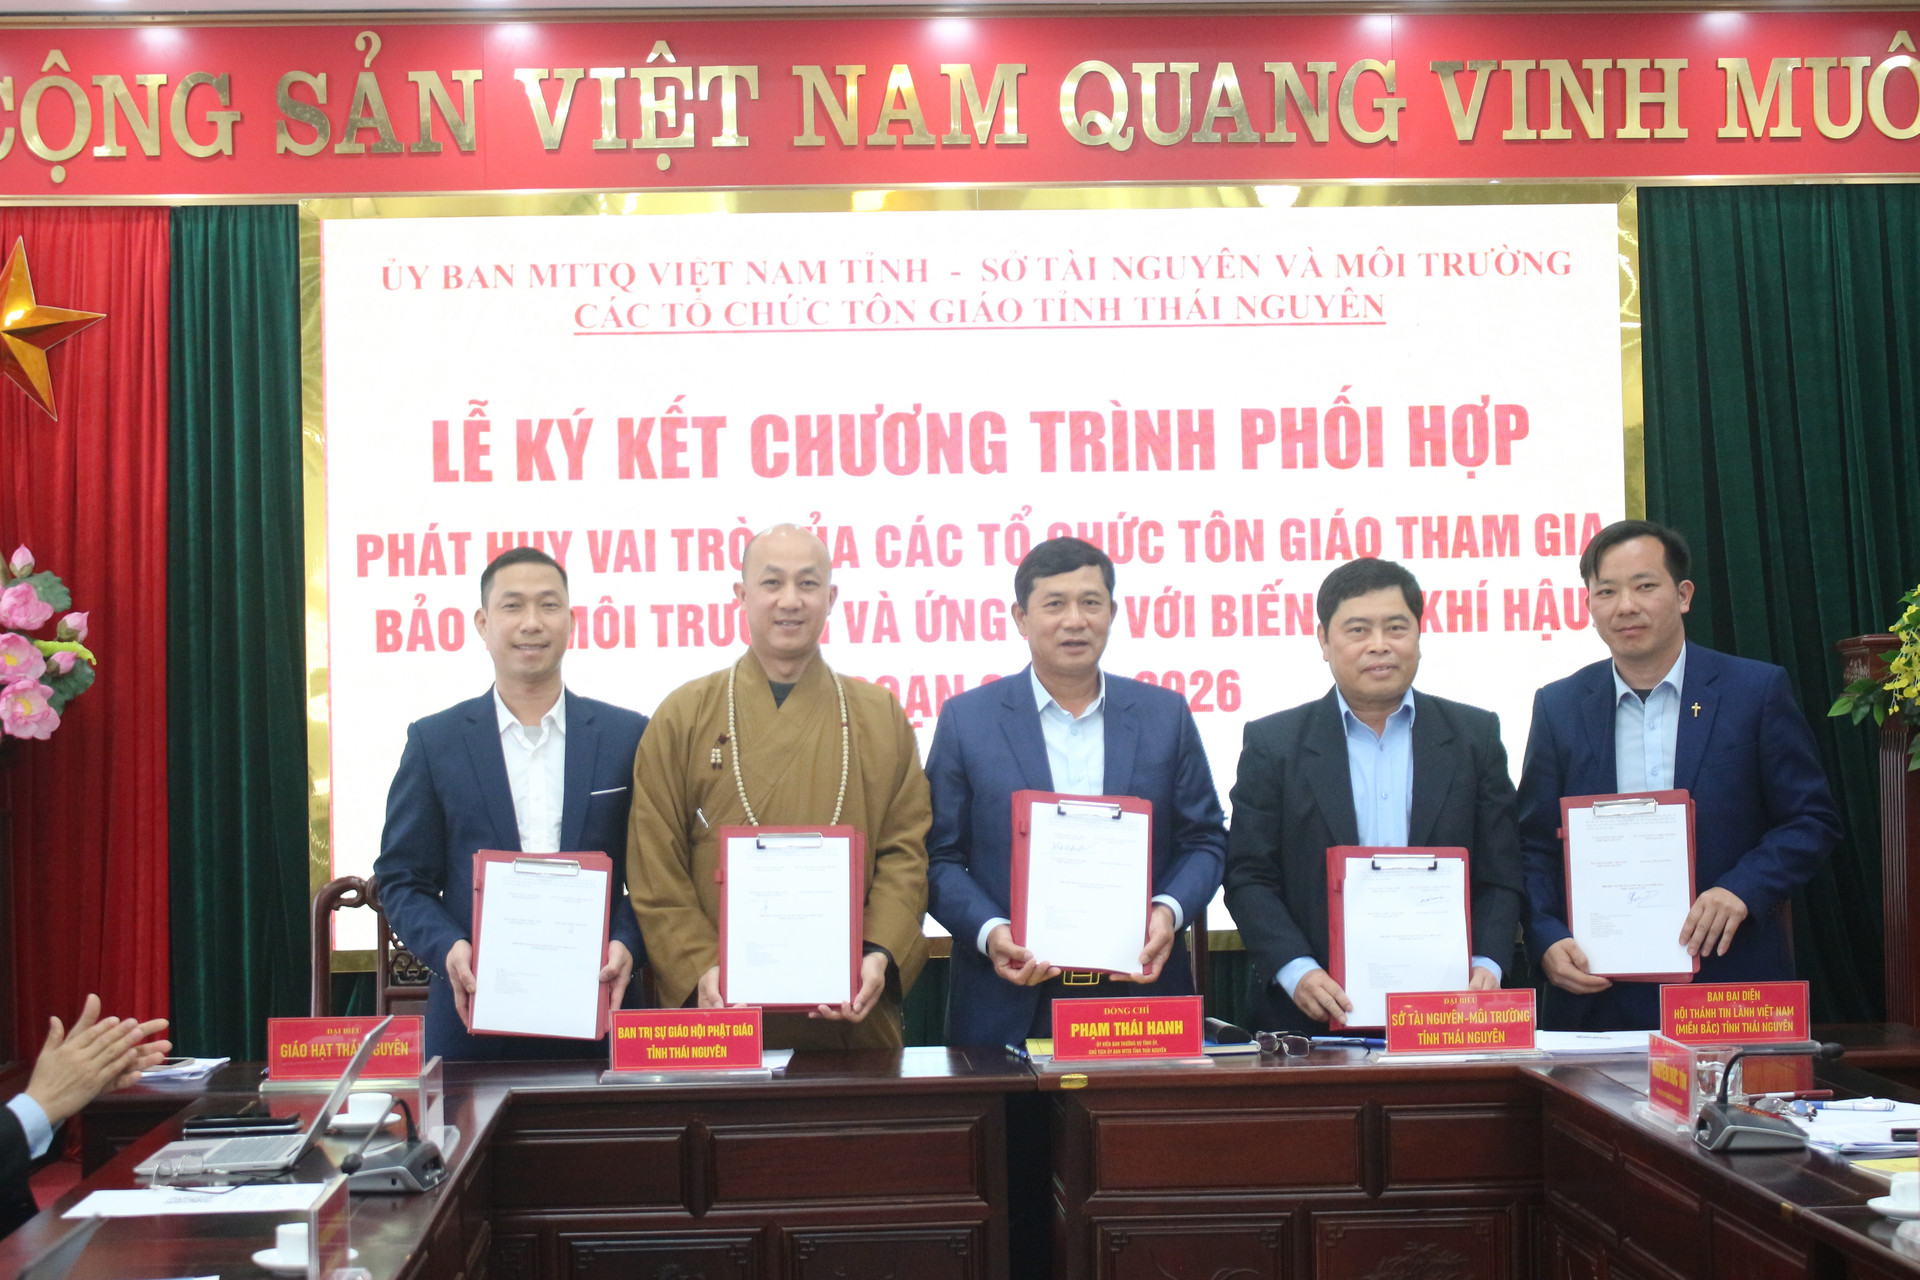 Đại diện Ủy ban MTTQ tỉnh Thái Nguyên, Sở Tài nguyên và Môi trường, đại diện tổ chức tôn giáo cùng ký kết chương trình phối hợp.